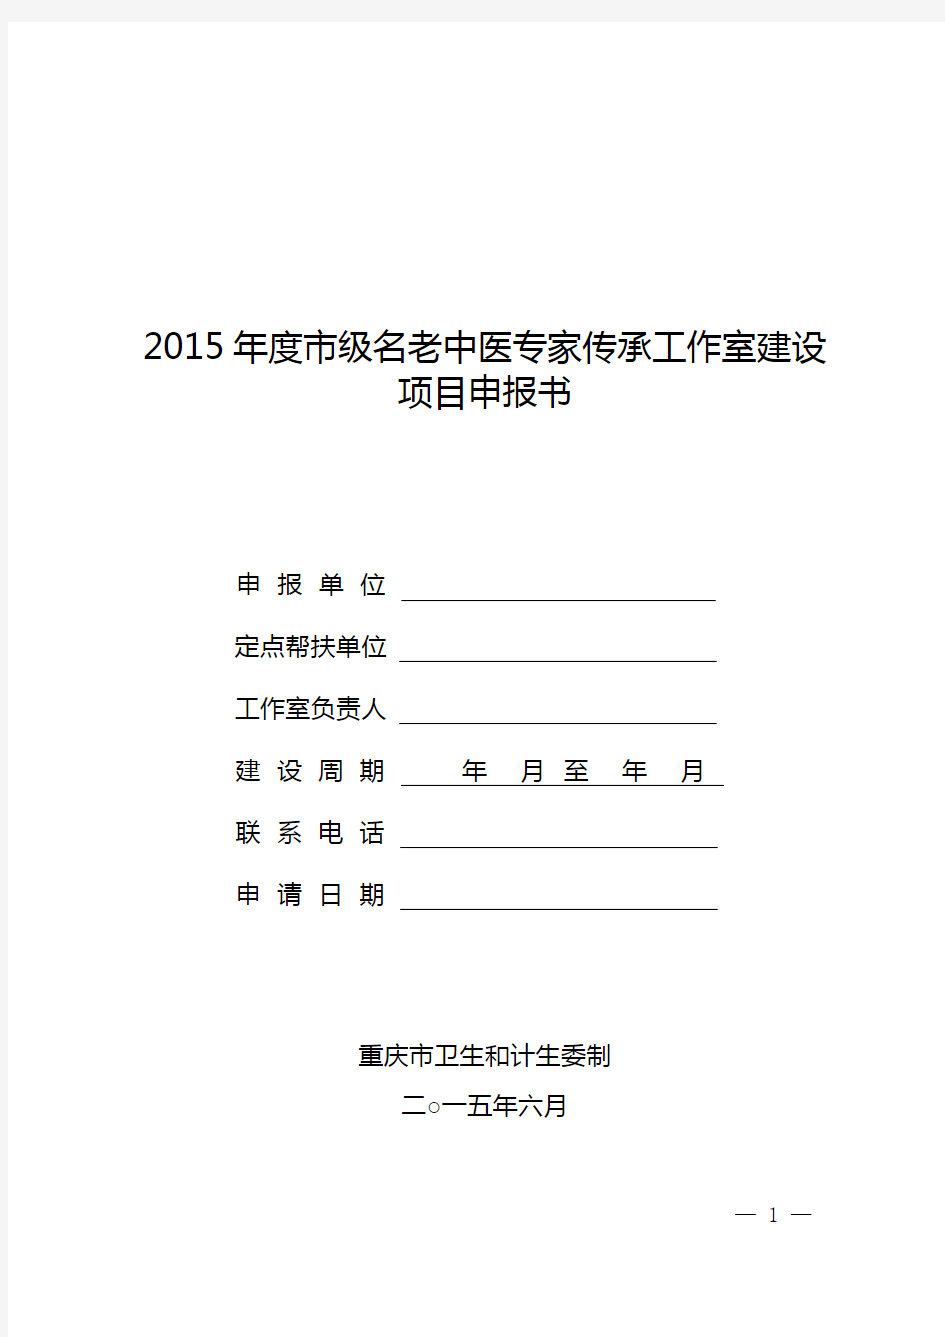 2015年度市级重庆市名老中医专家传承工作室建设项目申报书